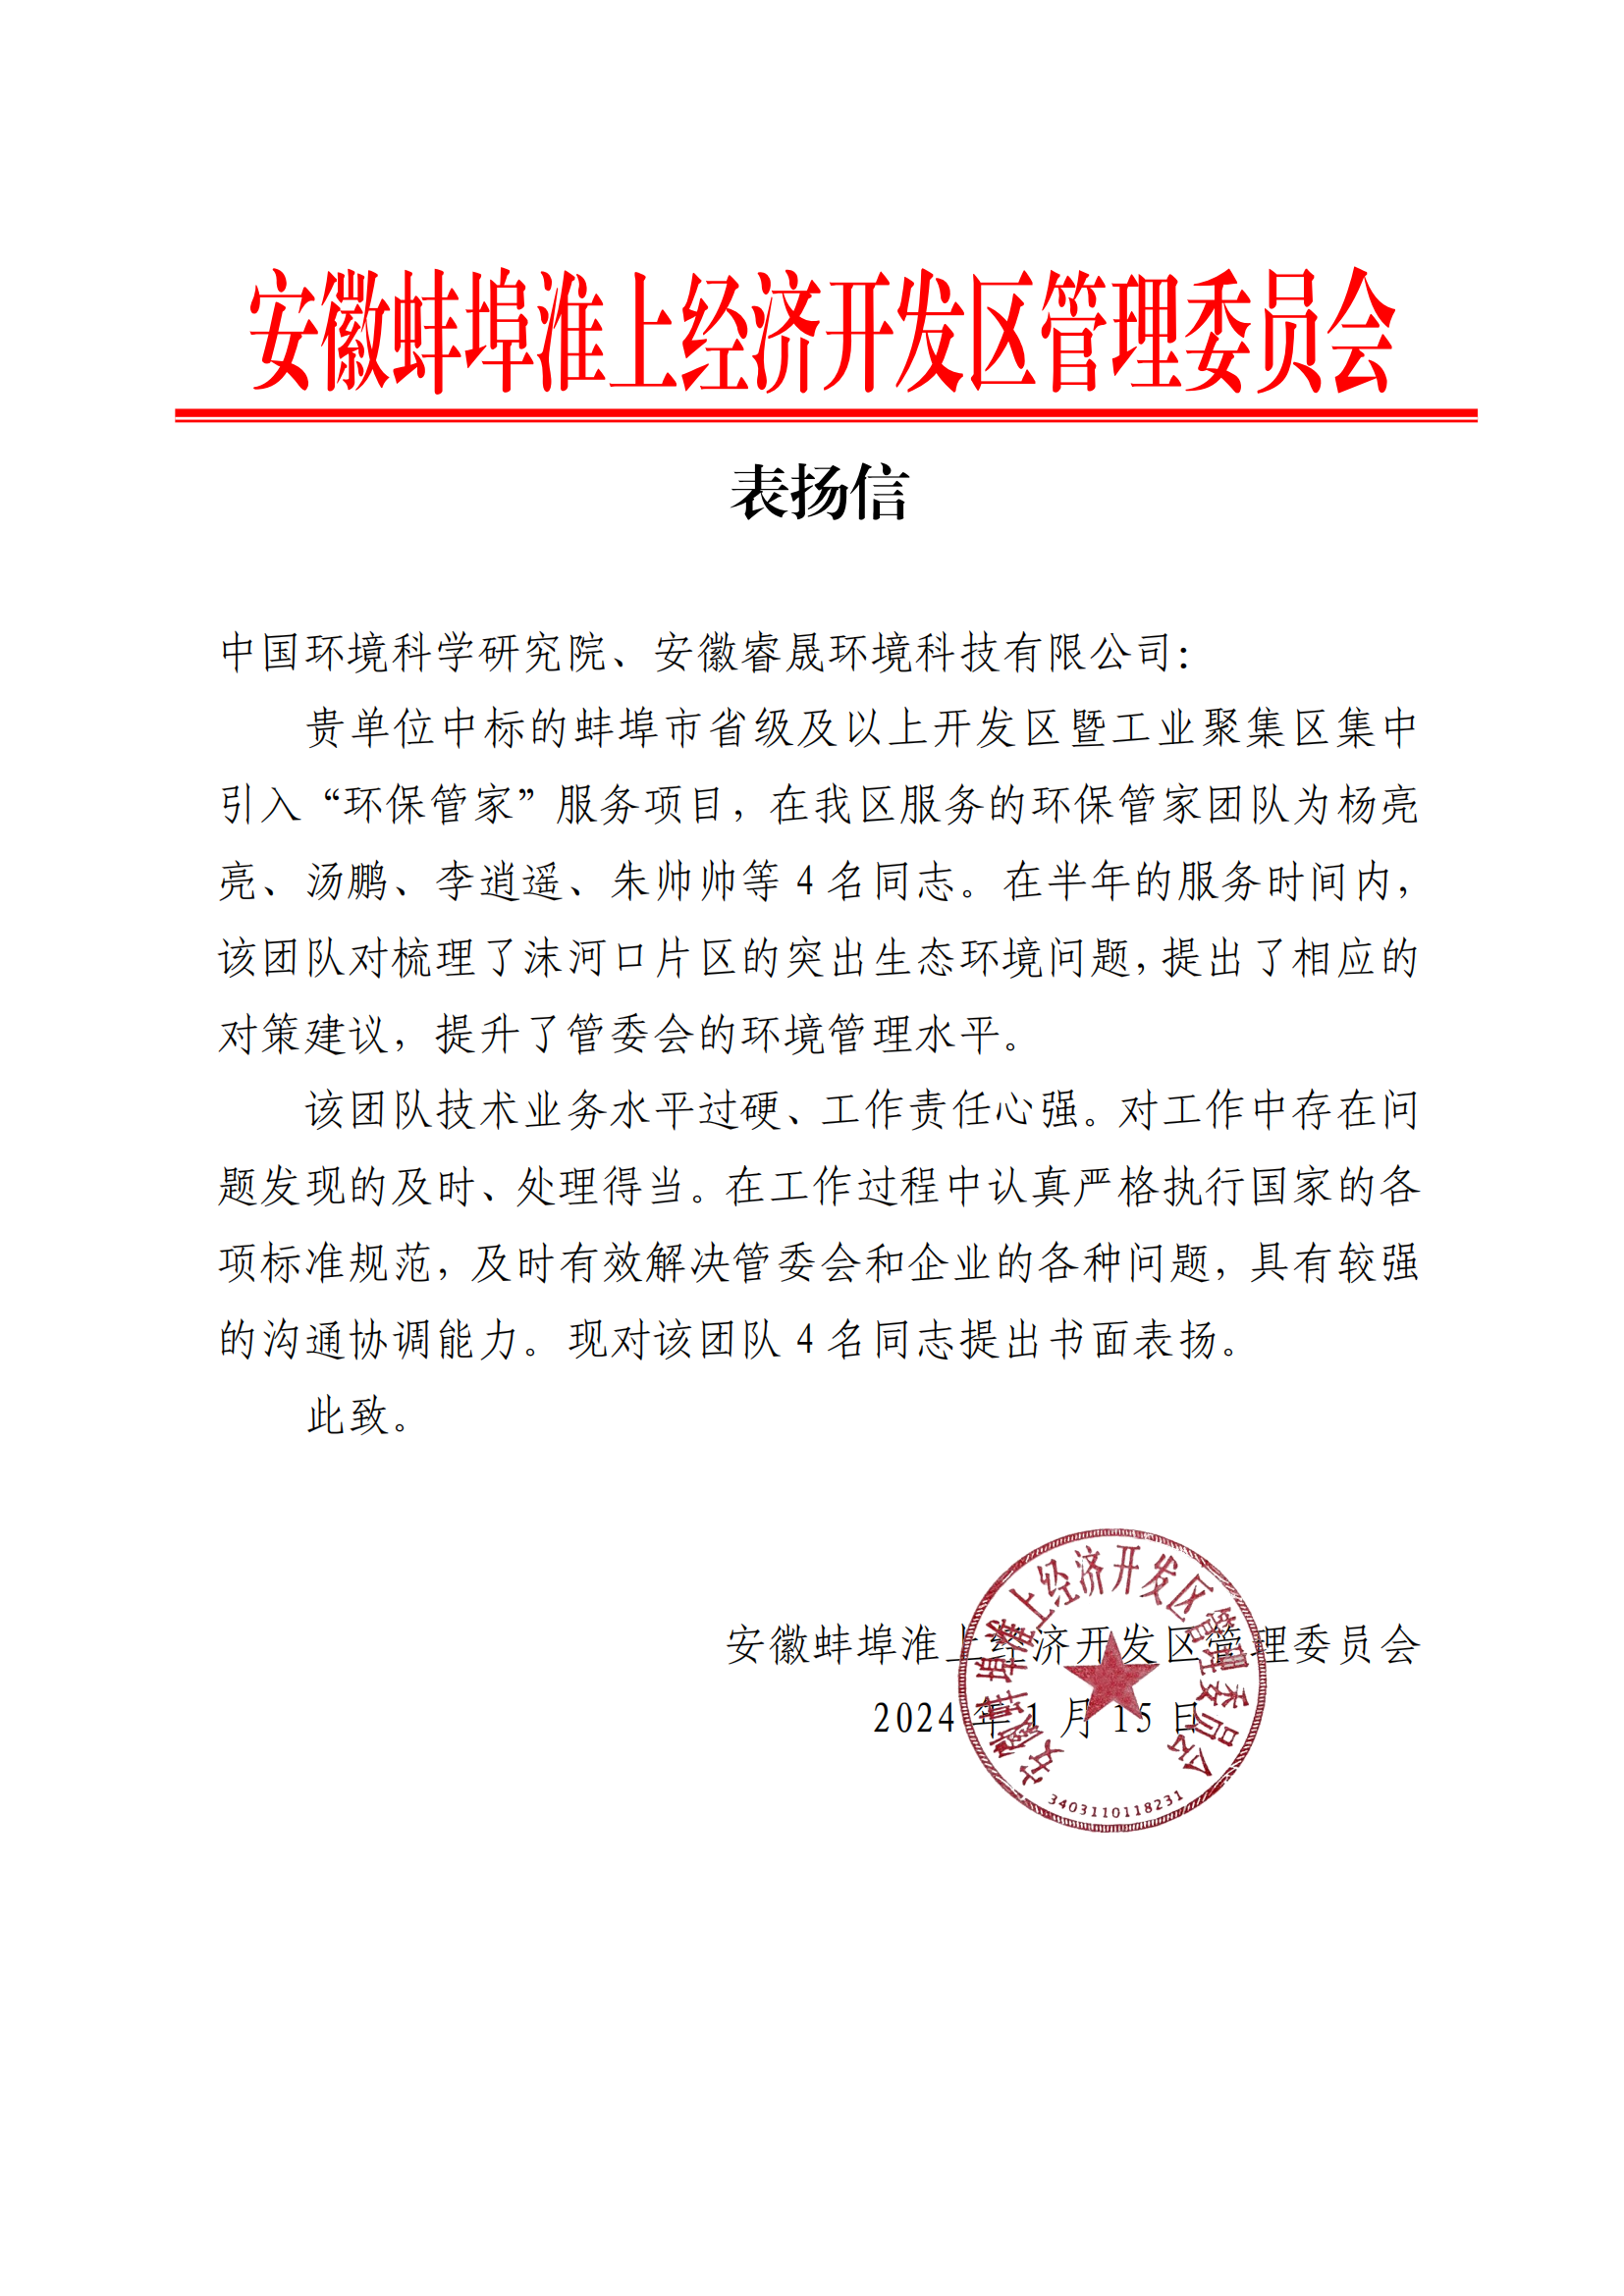 喜报丨集团收到安徽蚌埠淮上经济开发区管理委员会表扬信